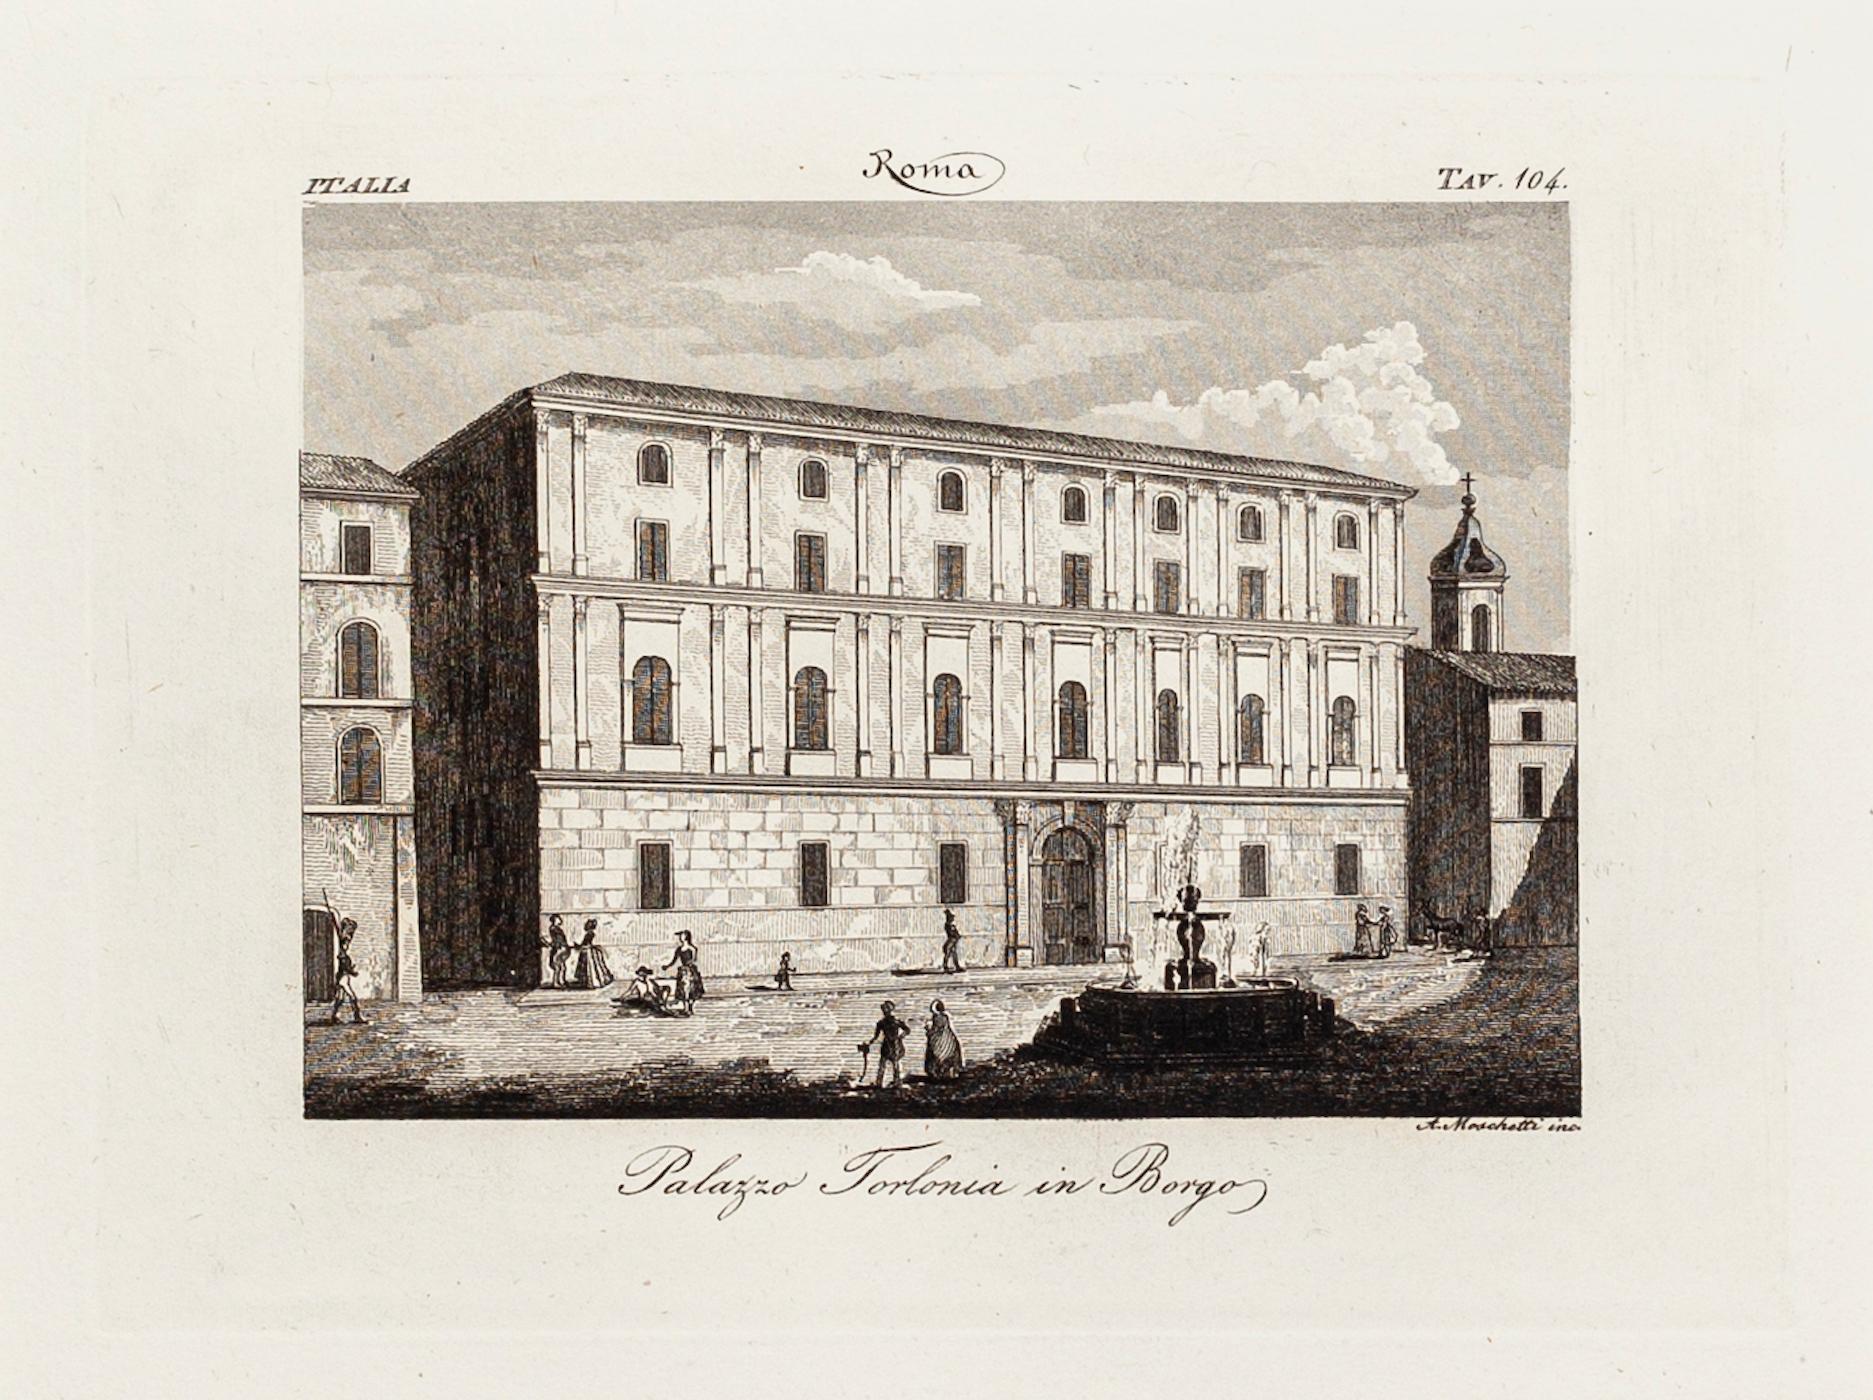 Alessandro Moschetti Figurative Print - Palazzo Torlonia in Borgo - Original Etching by A. Moschetti - 19th Century